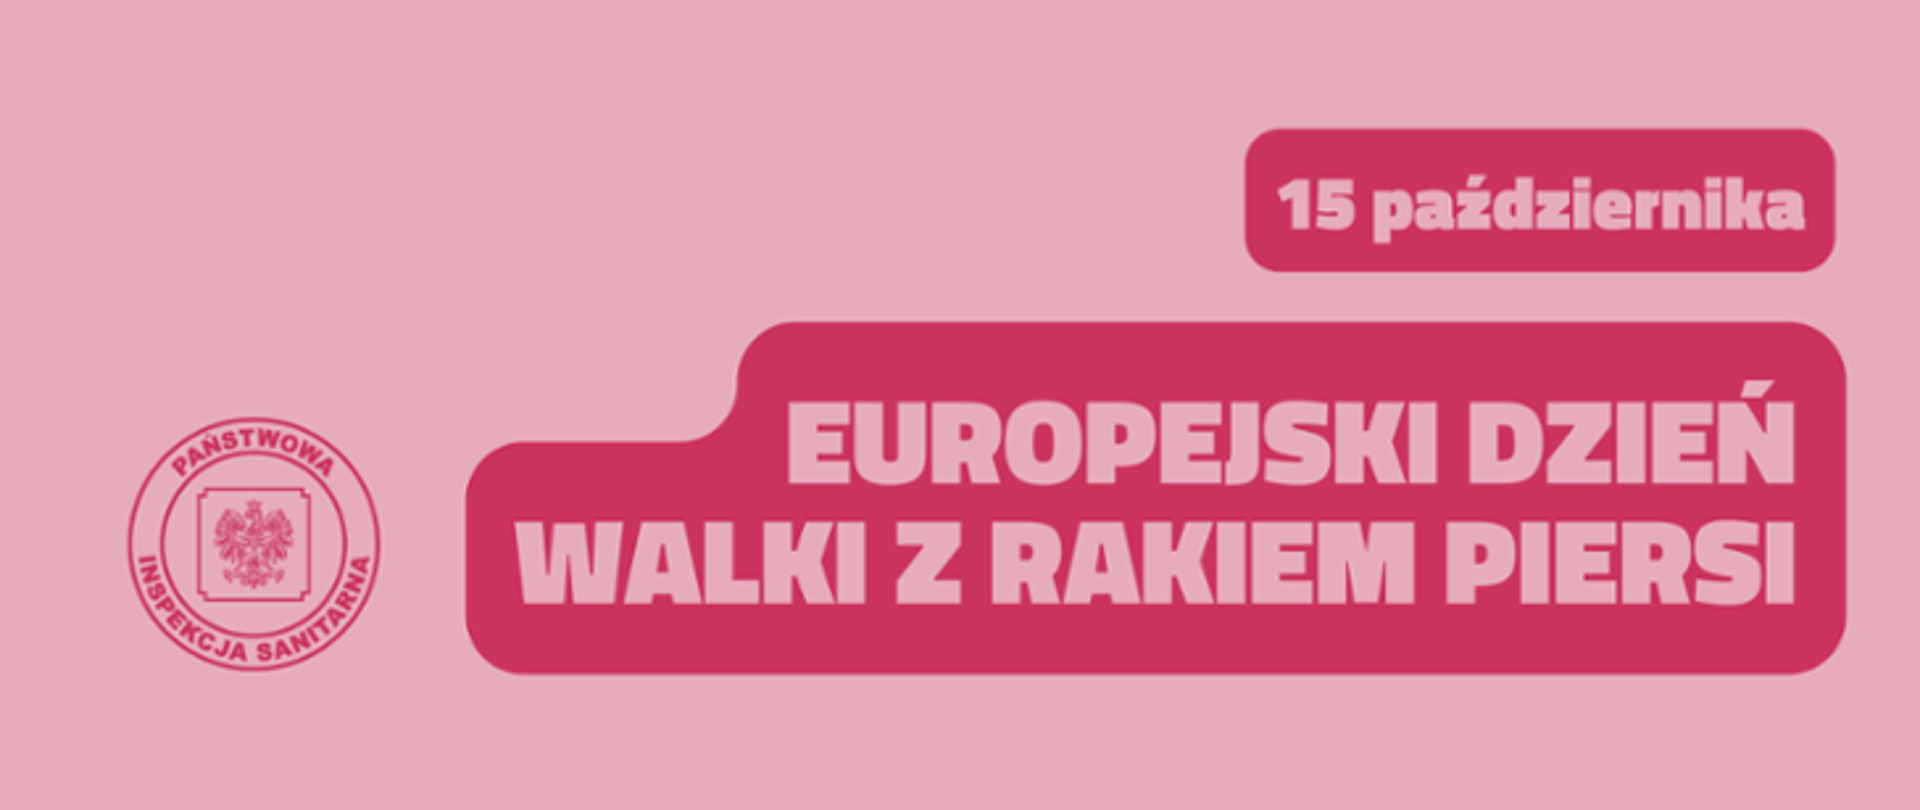 na różowym tle logo Państwowej Inspekcji Sanitarnej oraz tekst Europejski Dzień Walki z Rakiem Piersi